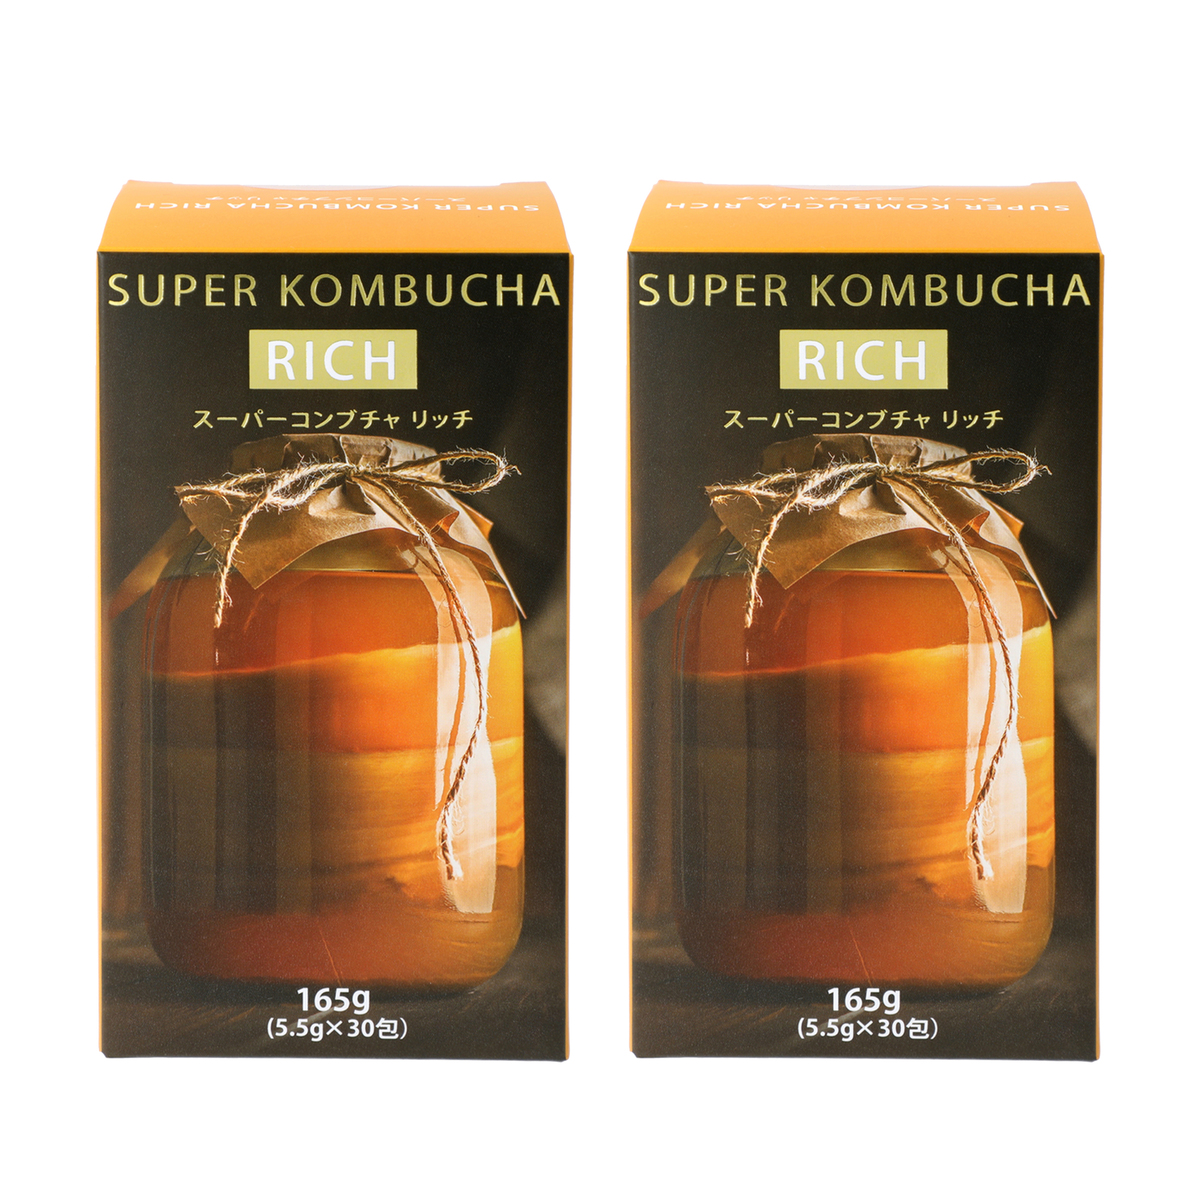 城咲仁さん スーパーコンブチャ super kombucha 40包✖️4箱 